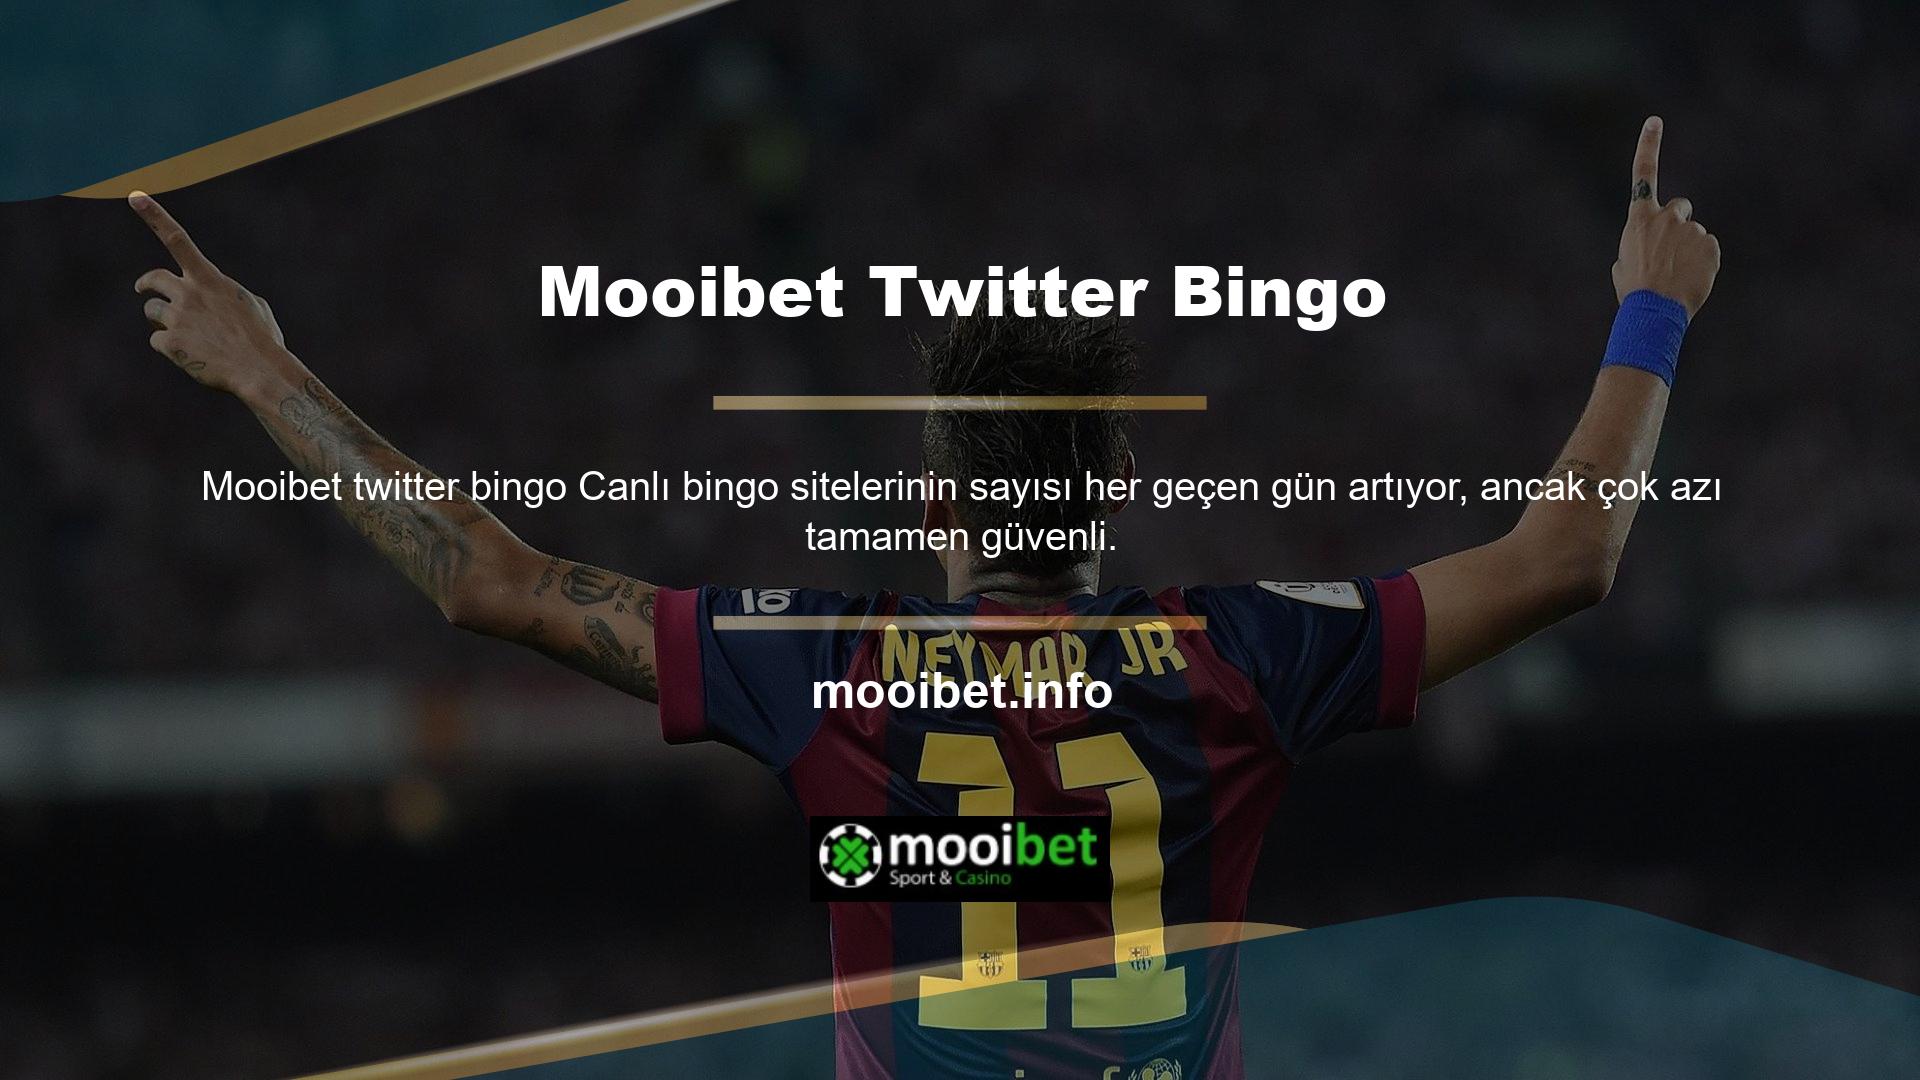 Mooibet Twitter Bingo